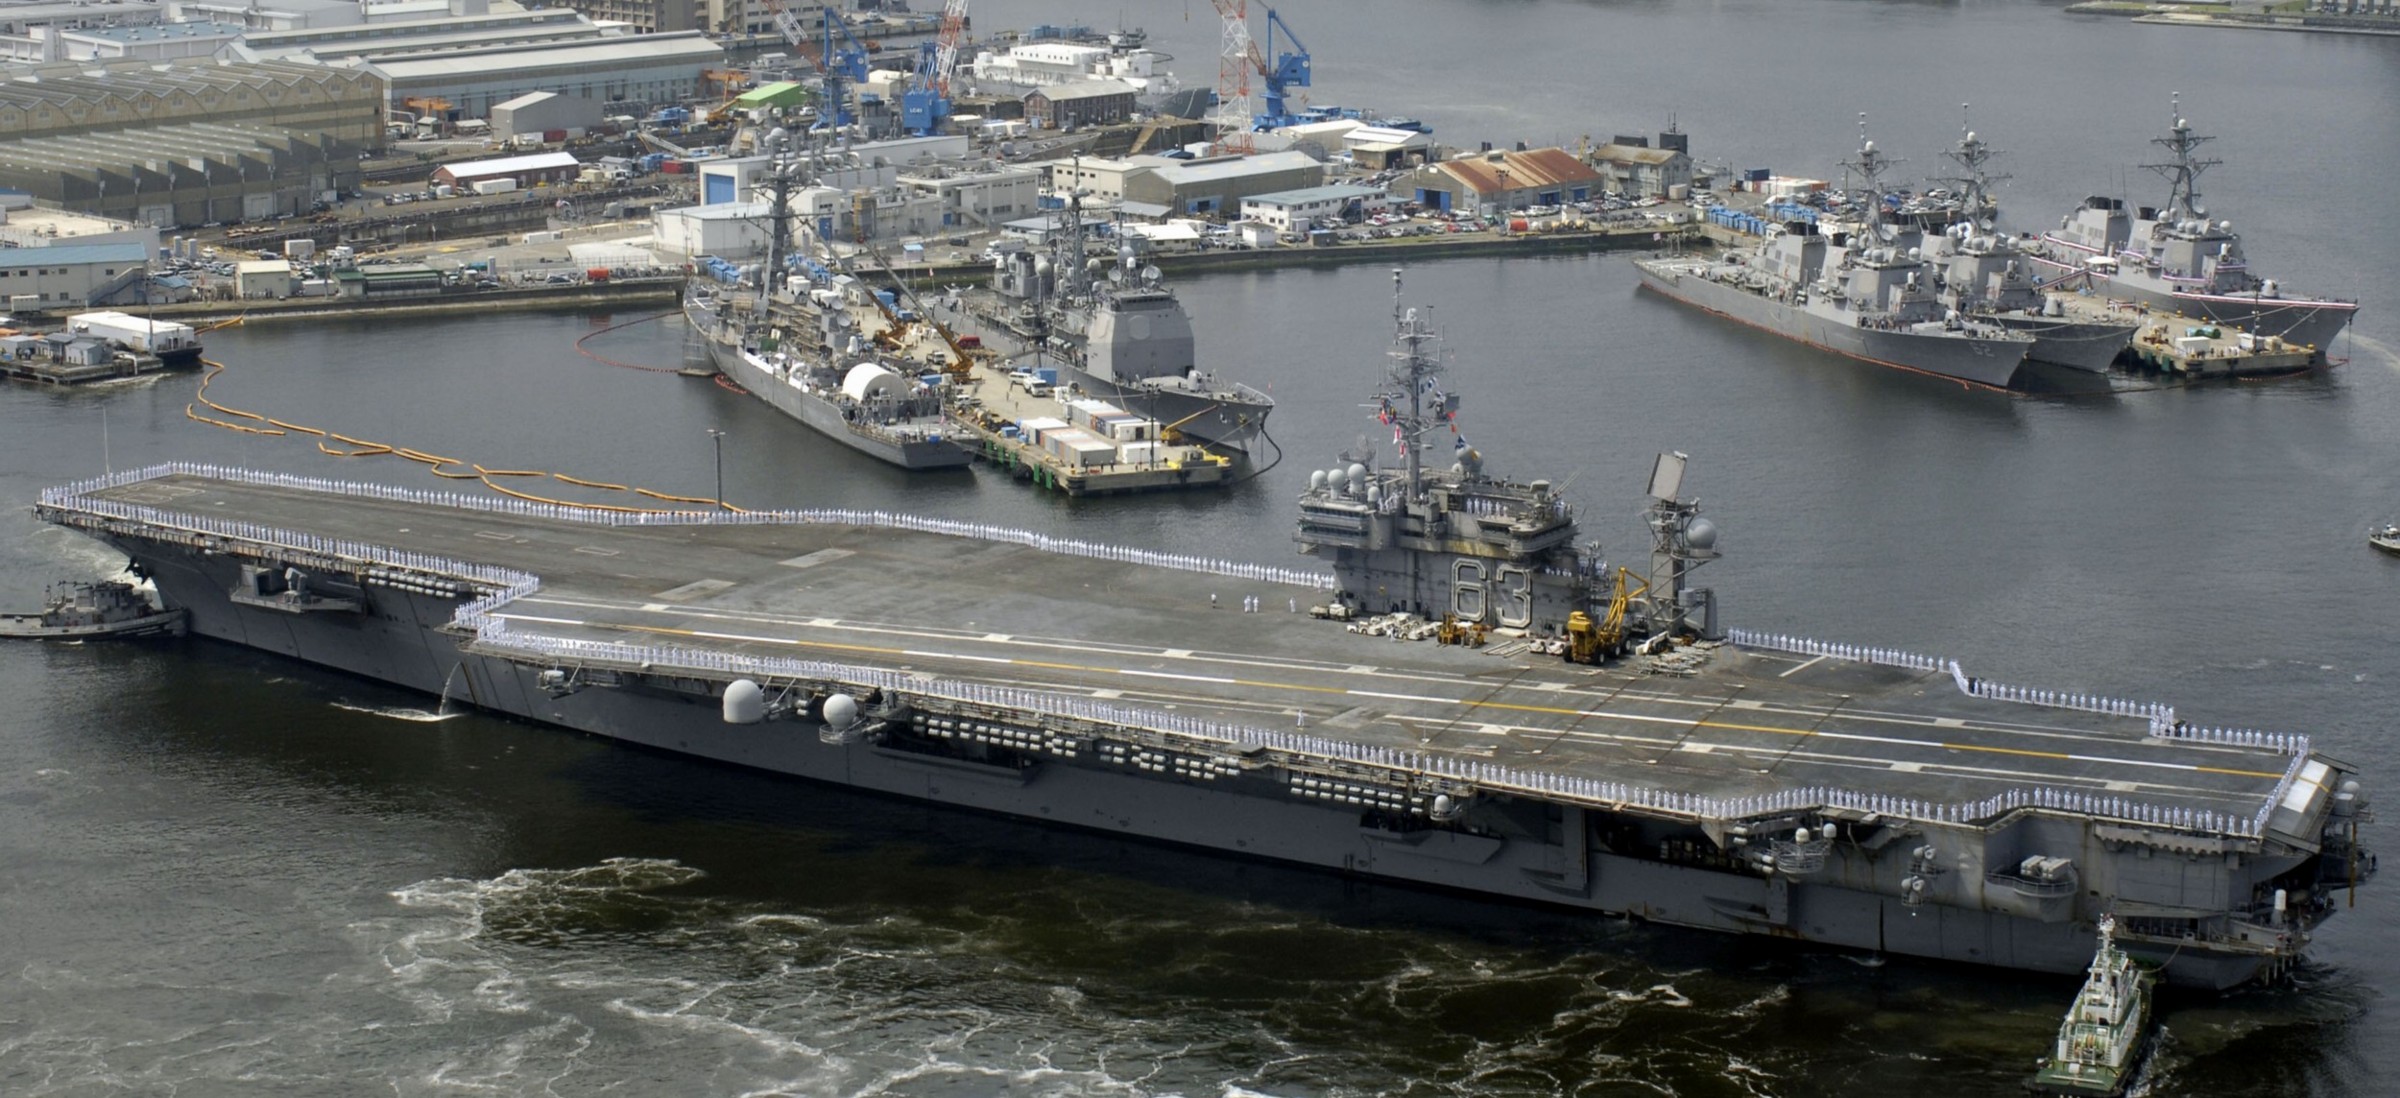 cv-63 uss kitty hawk aircraft carrier us navy 47 departing yokosuka japan final